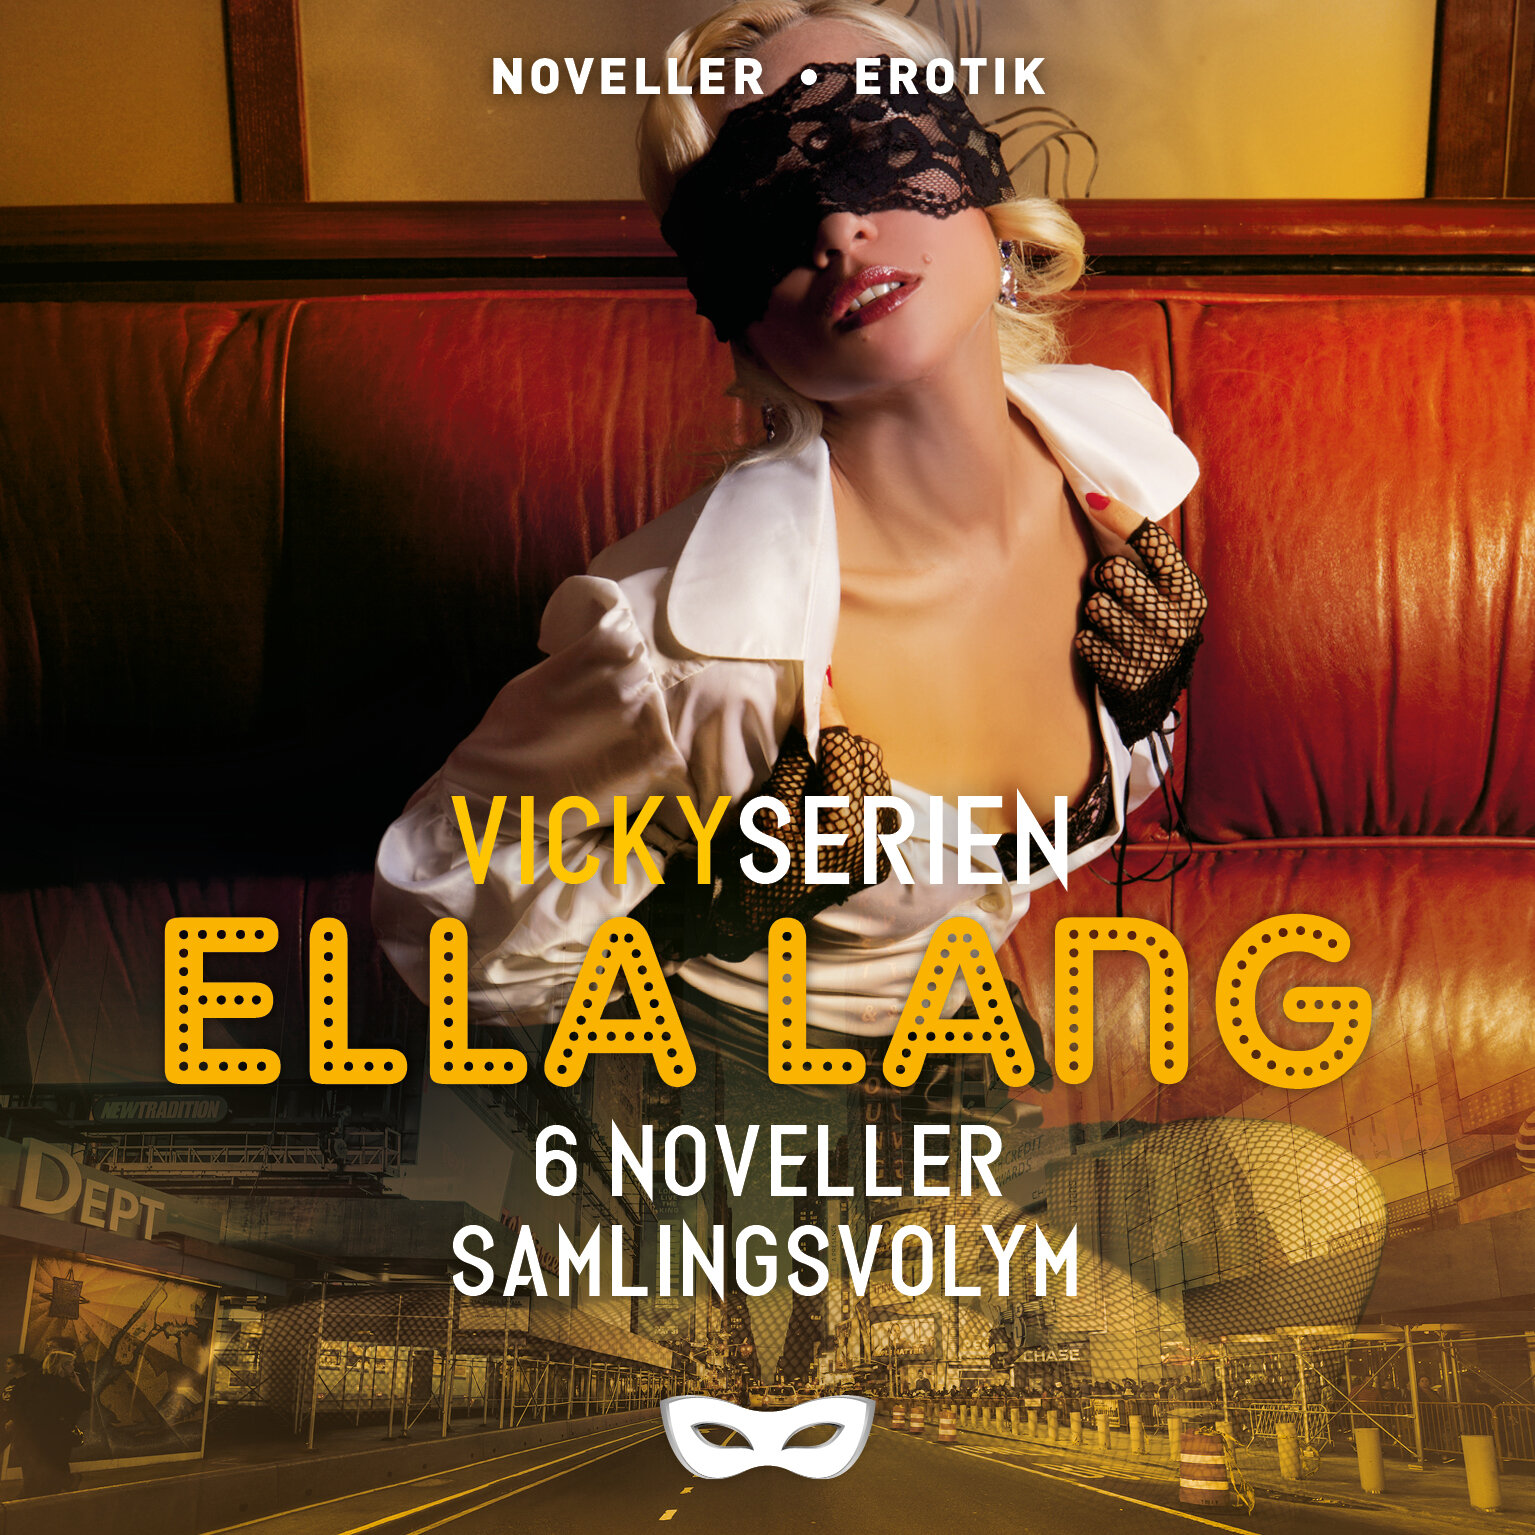 SAMVICKY1 Vickyserien Ella Lang 6 noveller samlingsvolym omslag audio.jpg